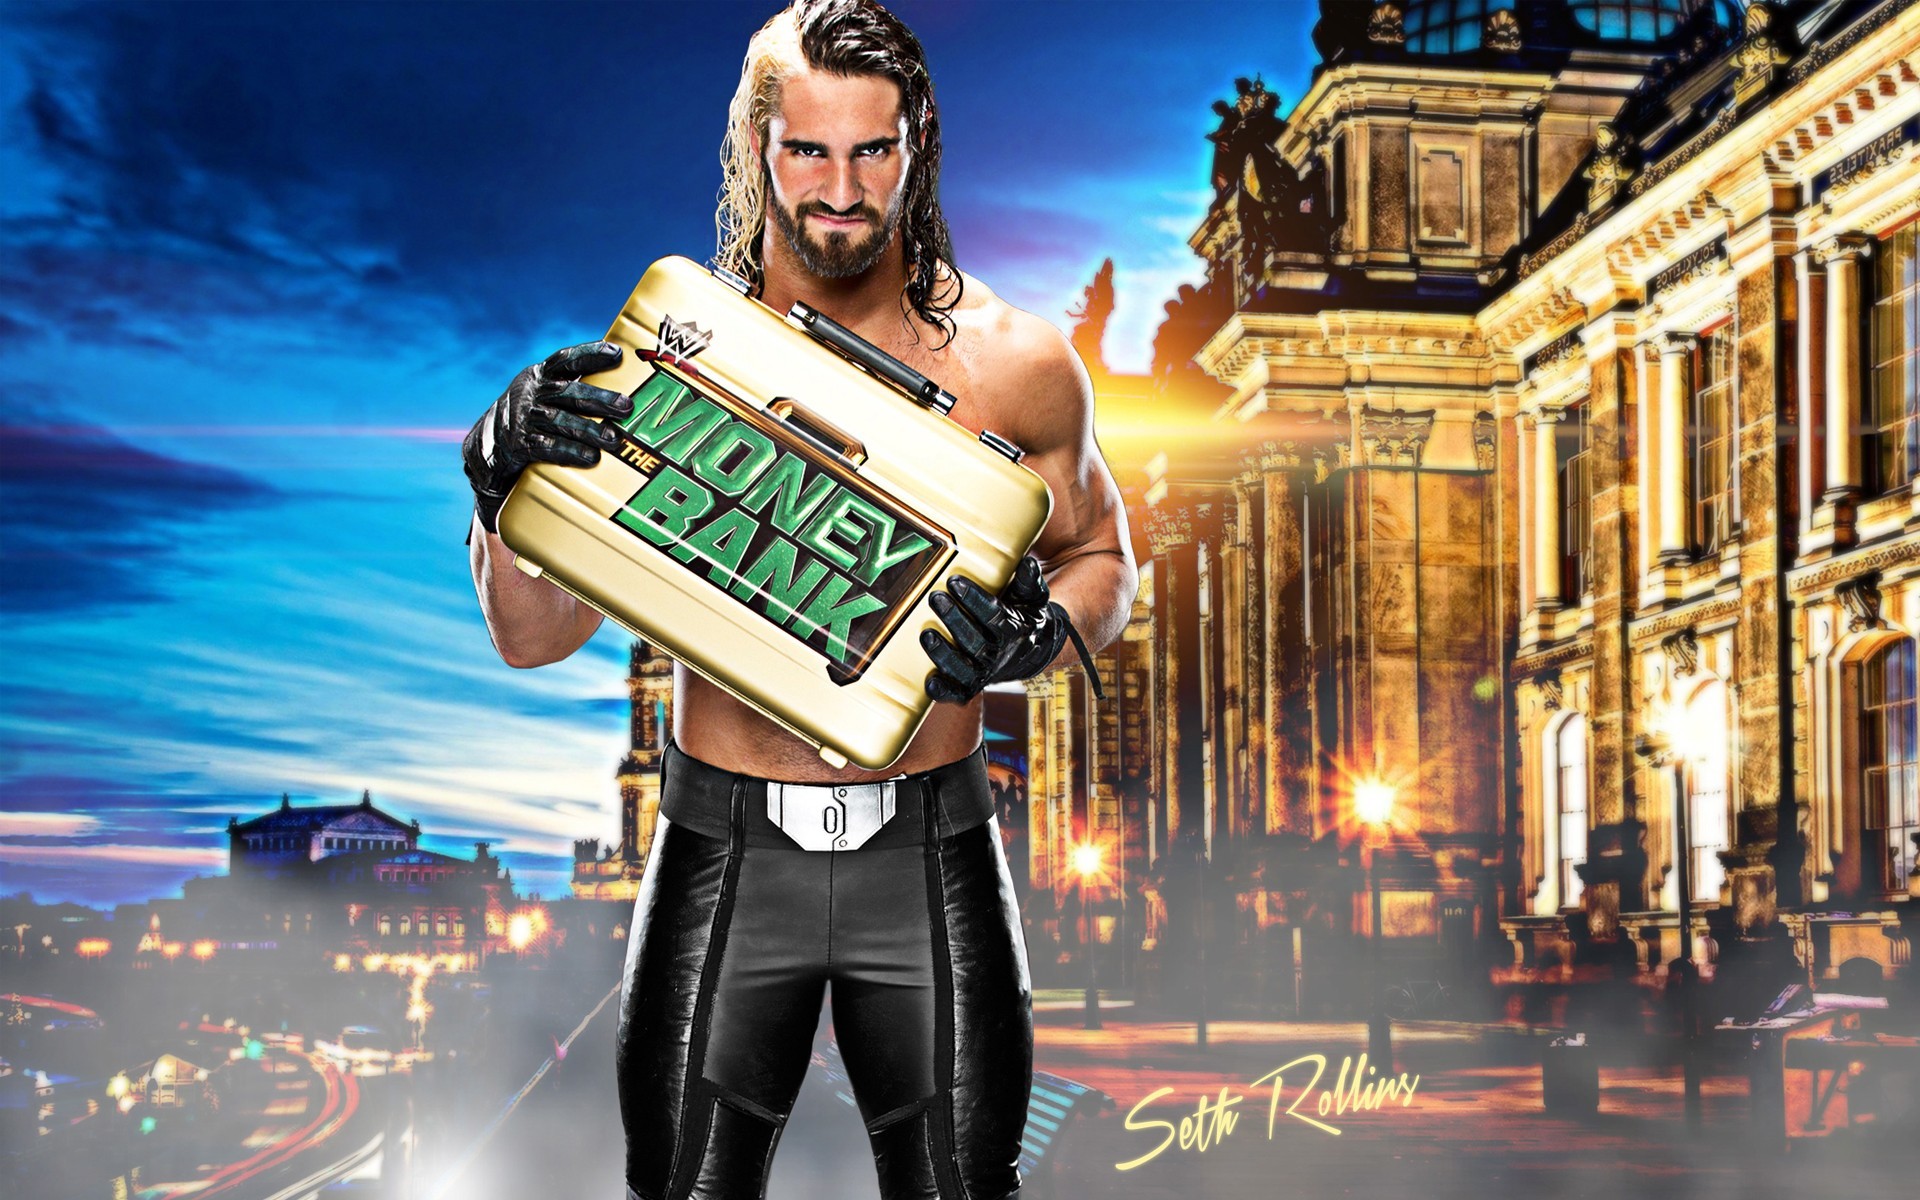 50+] WWE Seth Rollins Wallpaper - WallpaperSafari